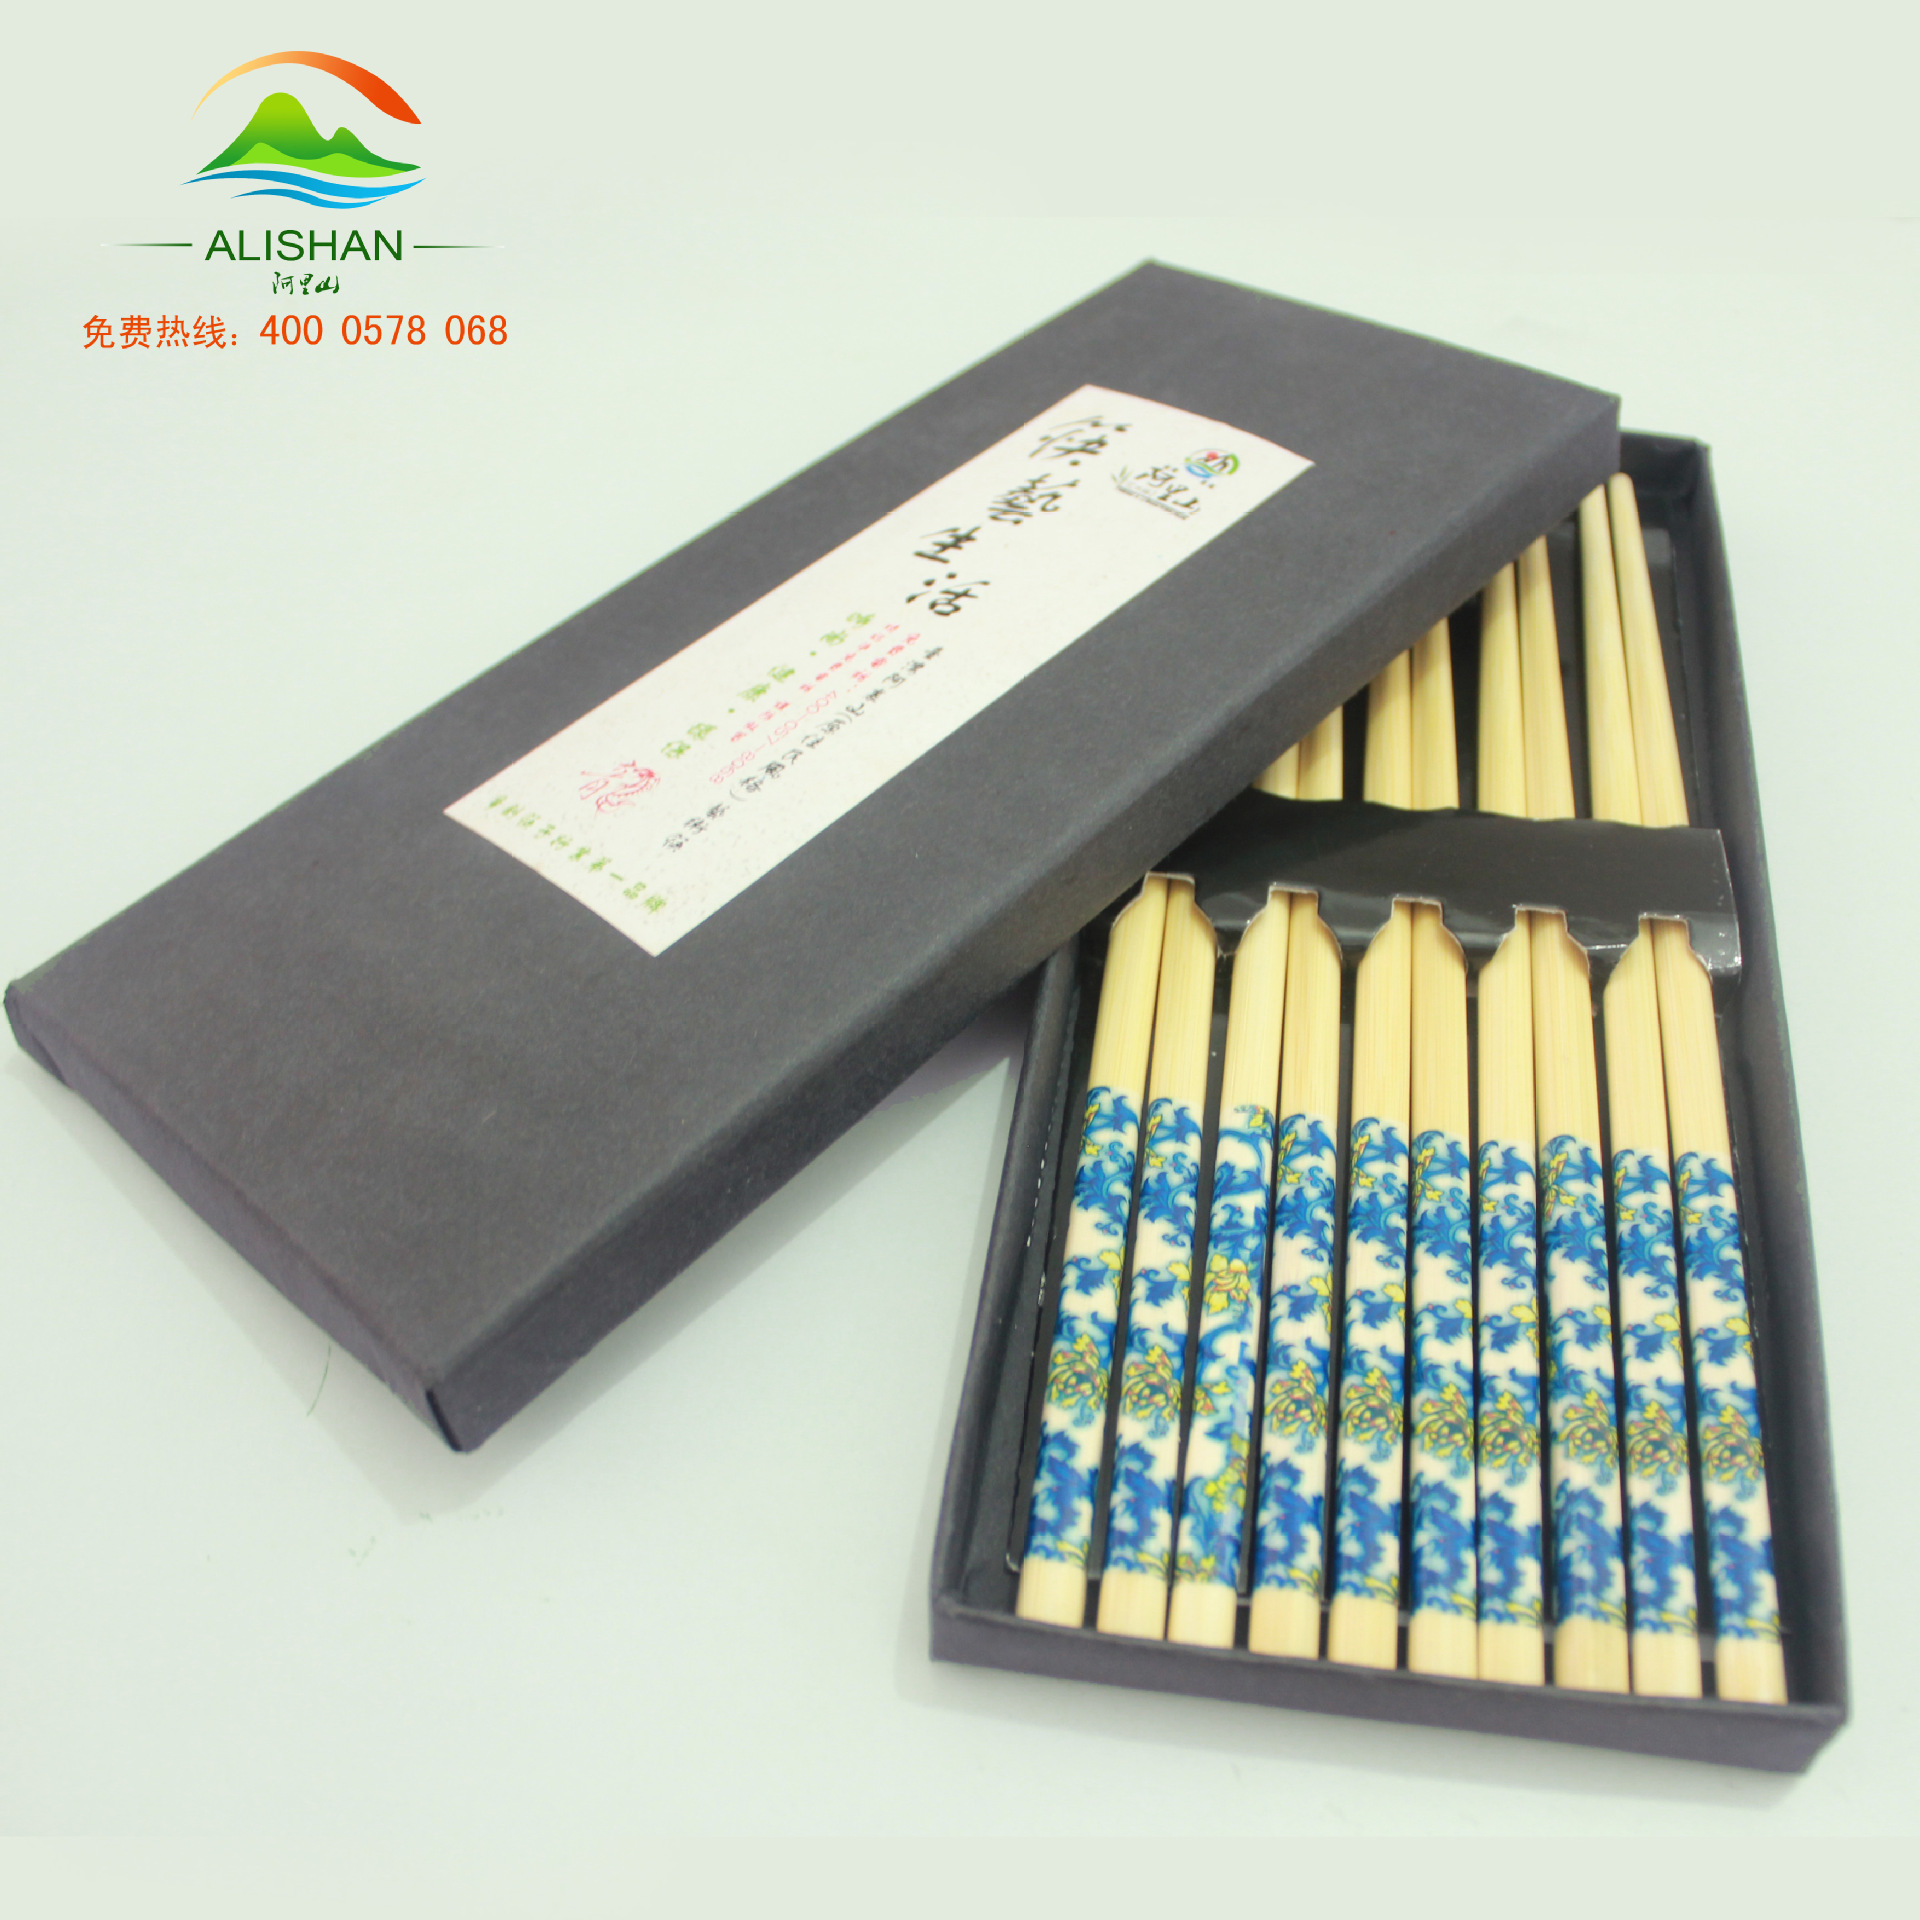 艺术筷多种印花筷子 赠品礼盒筷子  筷子生活